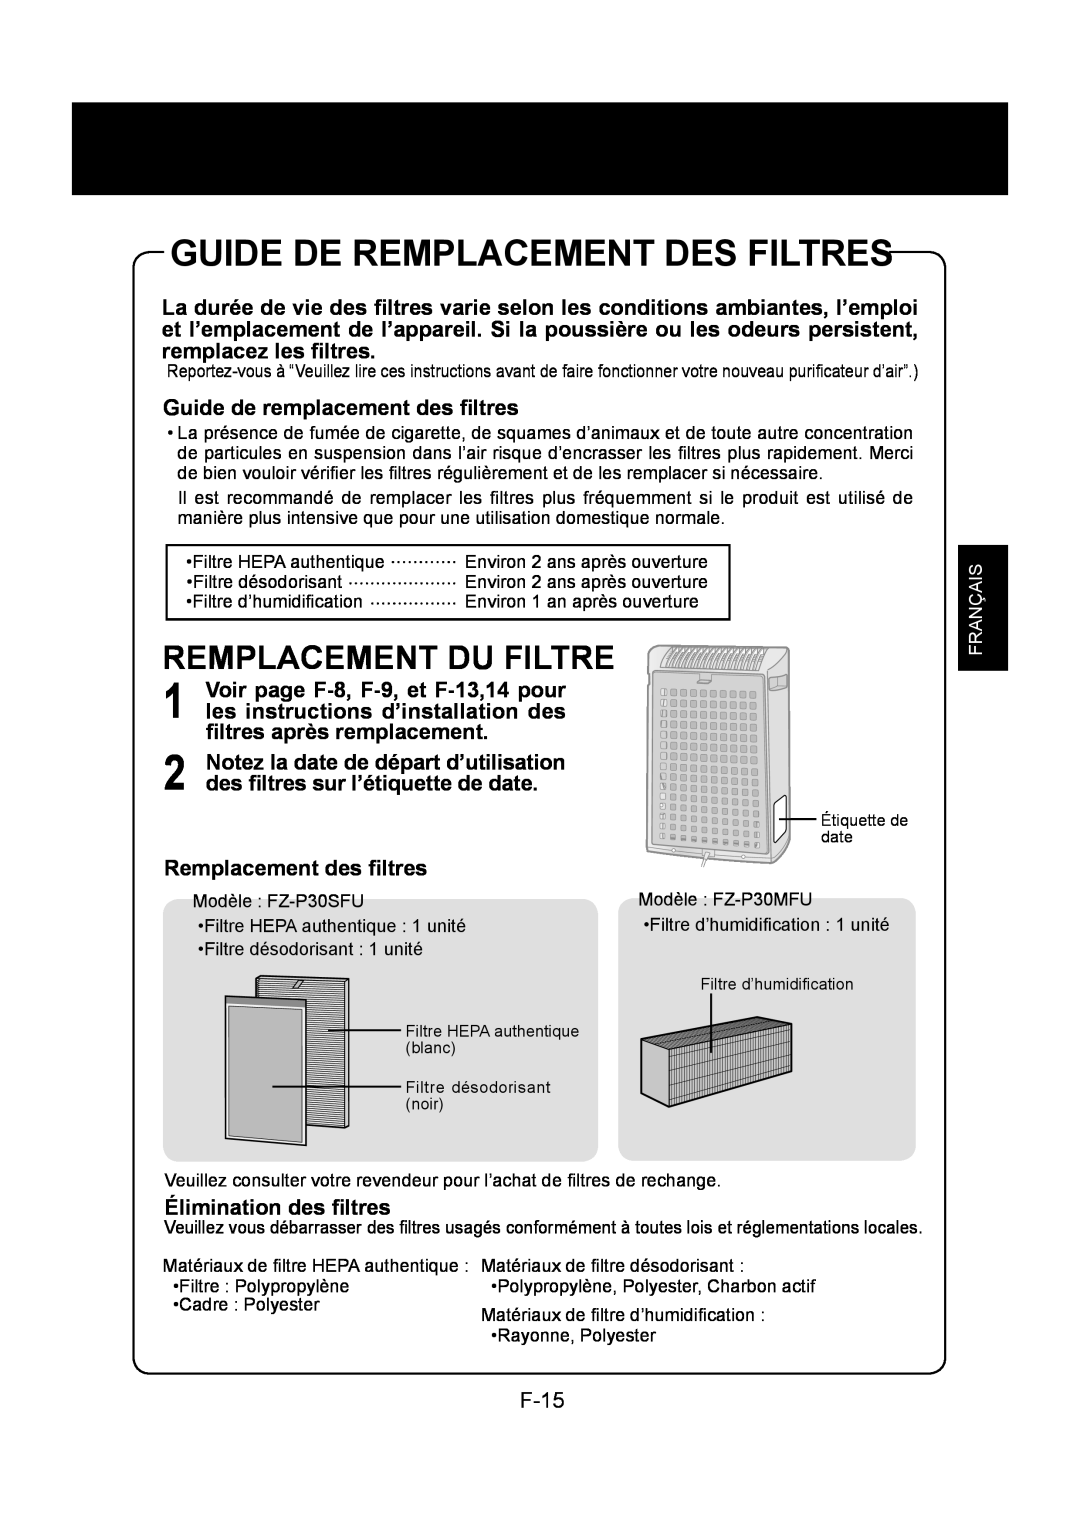 Sharp KC-830U operation manual Guide De Remplacement Des Filtres, Remplacement Du Filtre, F-15, Français 